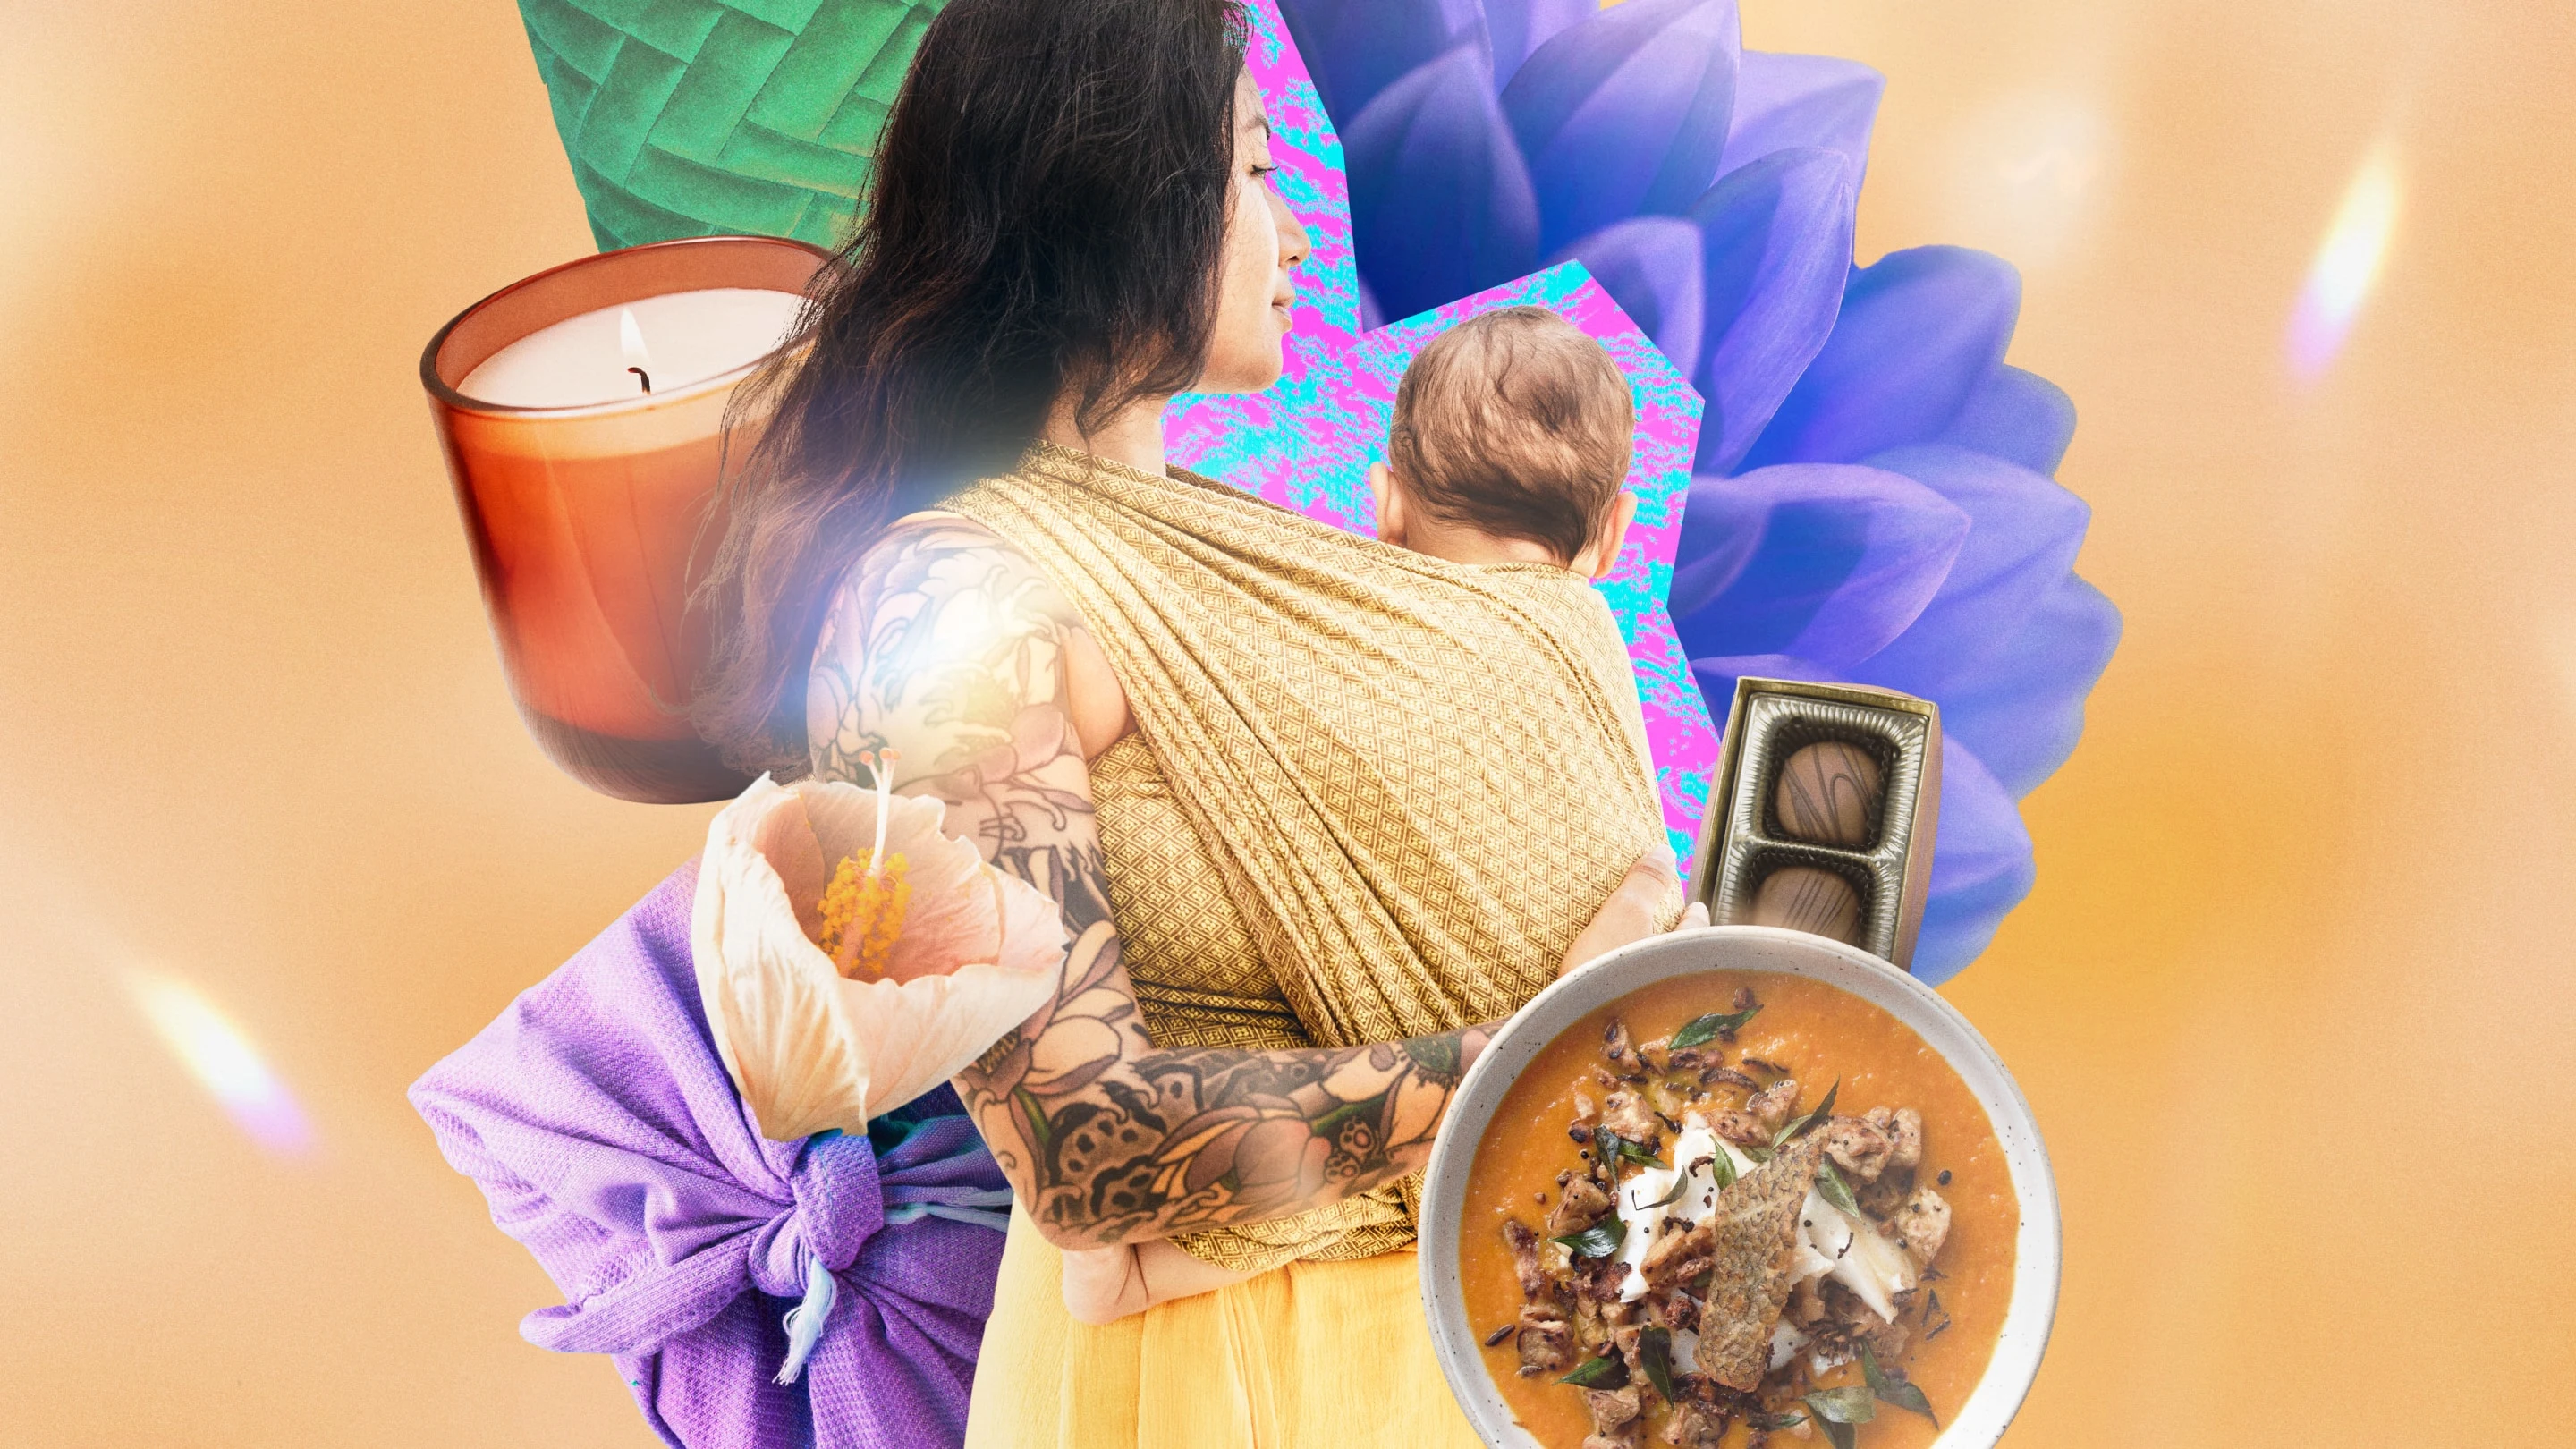 Eine tätowierte Frau, die ein Baby trägt, um das herum verschiedene Gegenstände angeordnet sind, darunter eine Kerze, Blütenblätter, eine Schachtel Pralinen, Suppe und Decken.